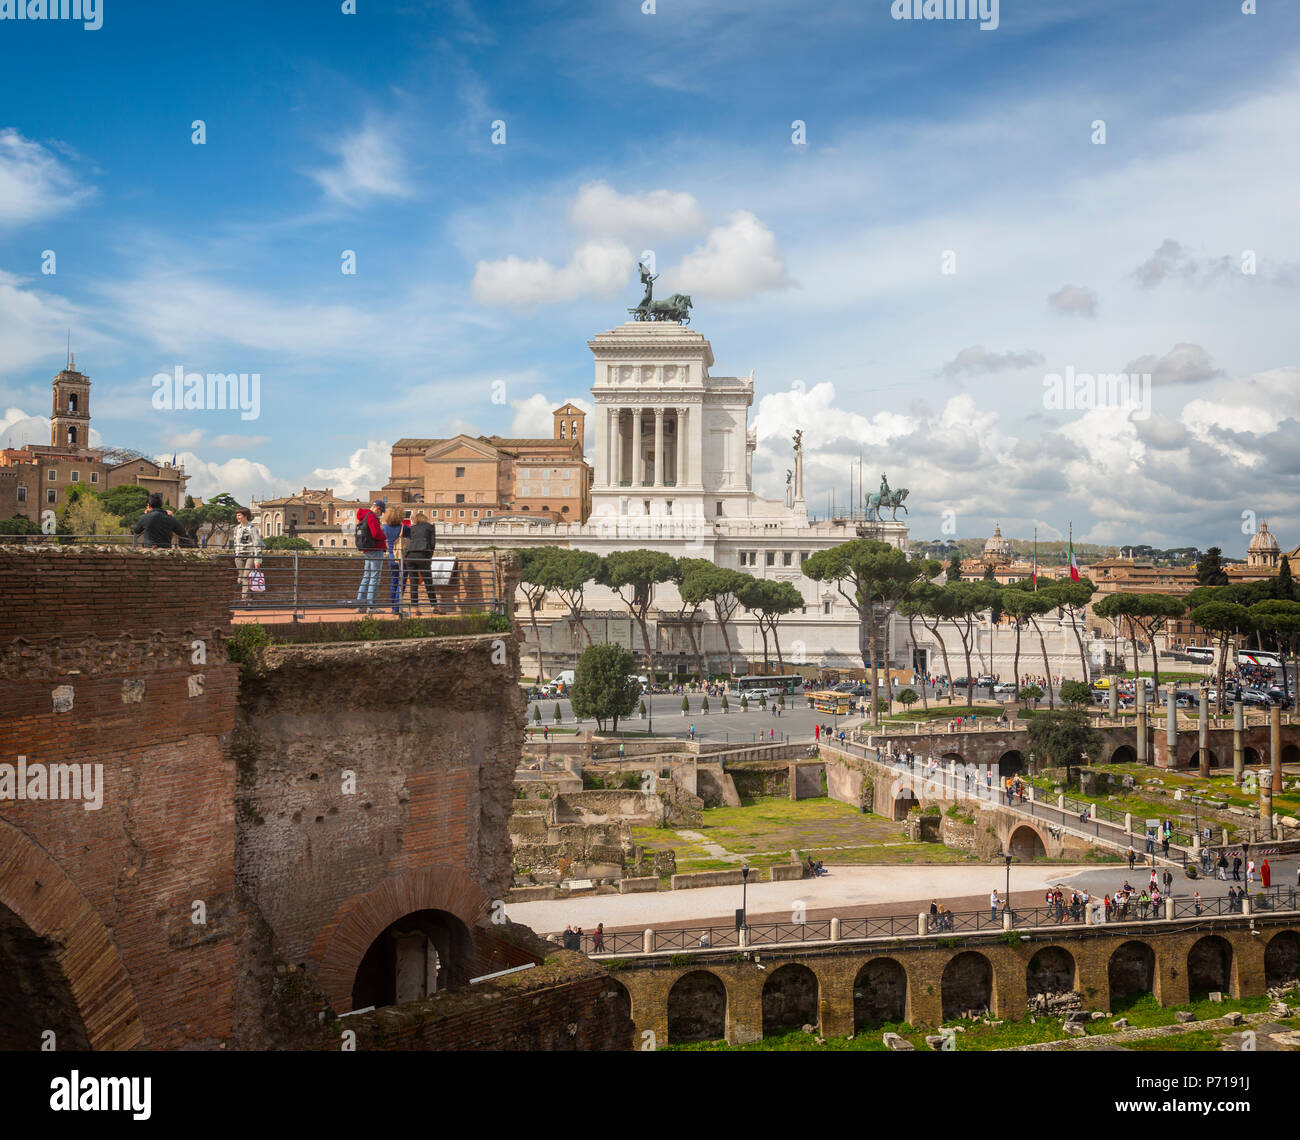 Roma, Italia. Monumento a Vittorio Emanuele II, noto anche come il Vittoriano, visto dal Foro di Traiano. Il centro storico di Roma è un patrimonio mondiale Foto Stock